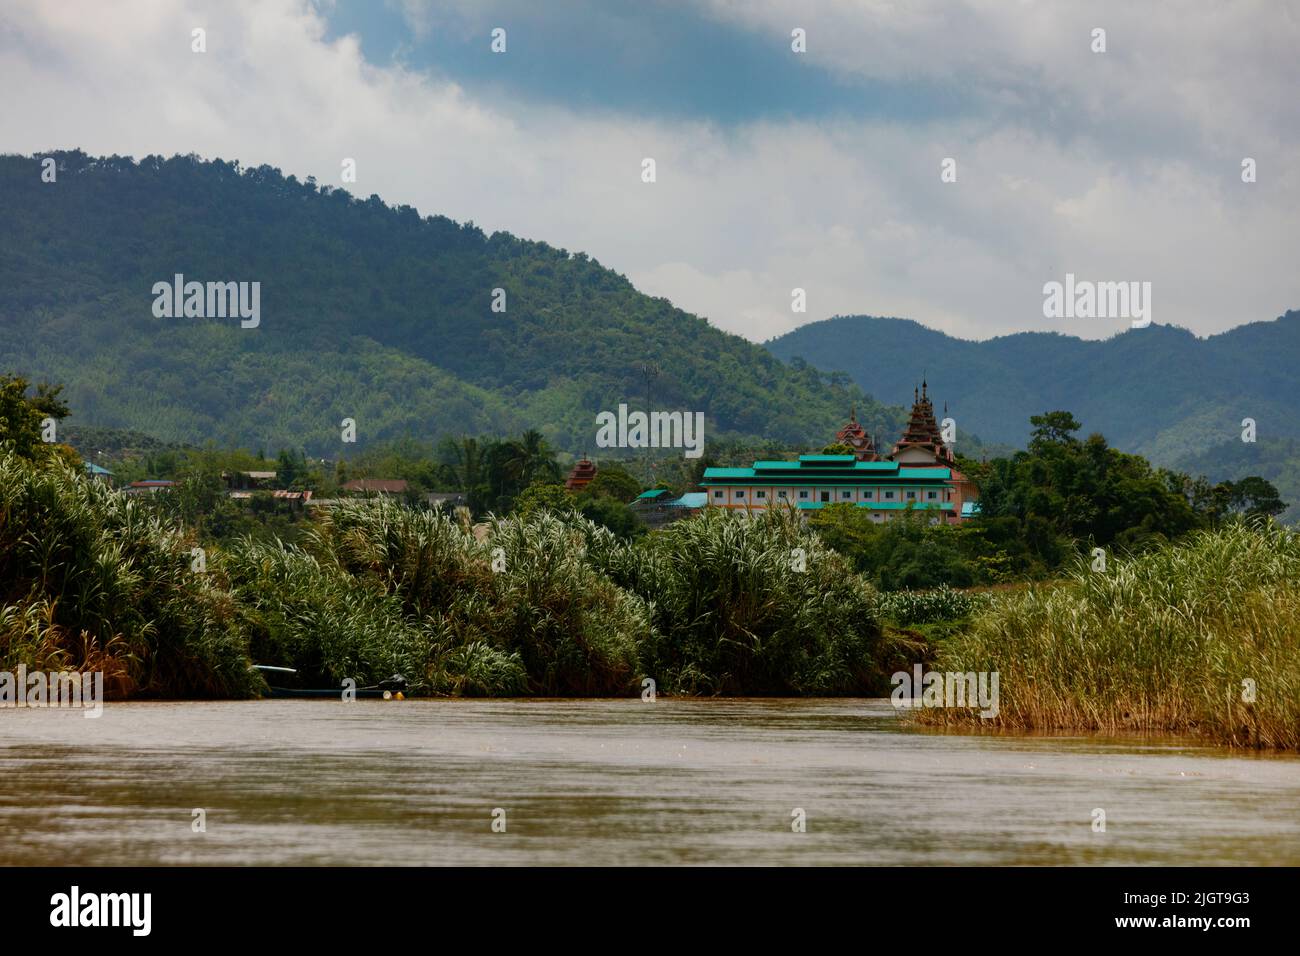 Templos budistas vistos desde un viaje en barco a lo largo del río MAE KOK desde Thaton hasta Chiang Rai - TAILANDIA Foto de stock